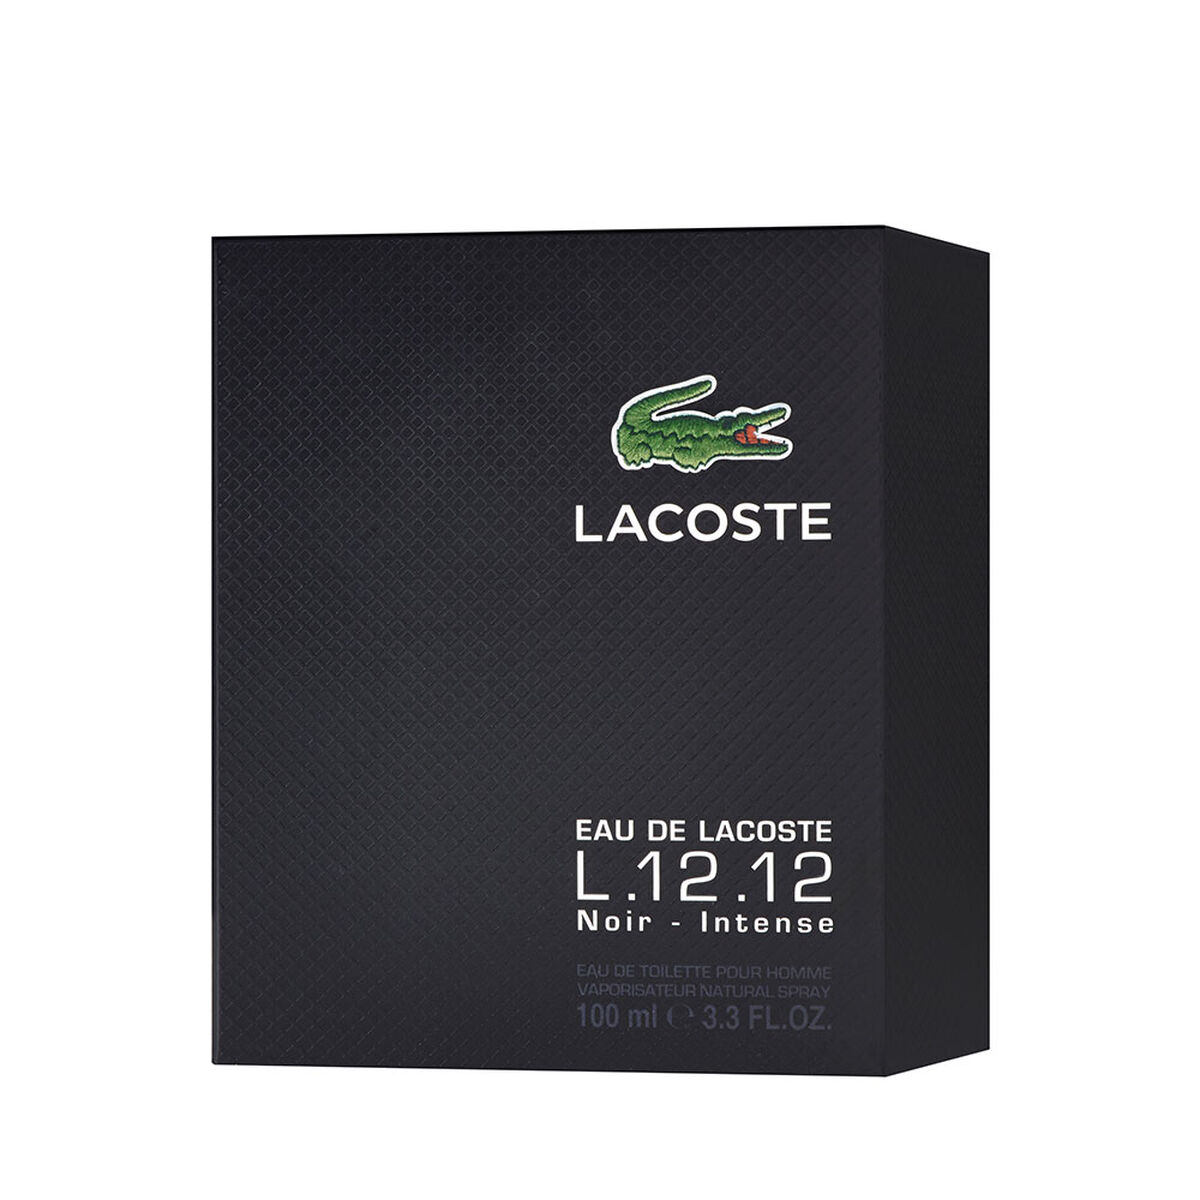 Perfume Lacoste L.12.12 Noir EDT 100 ml